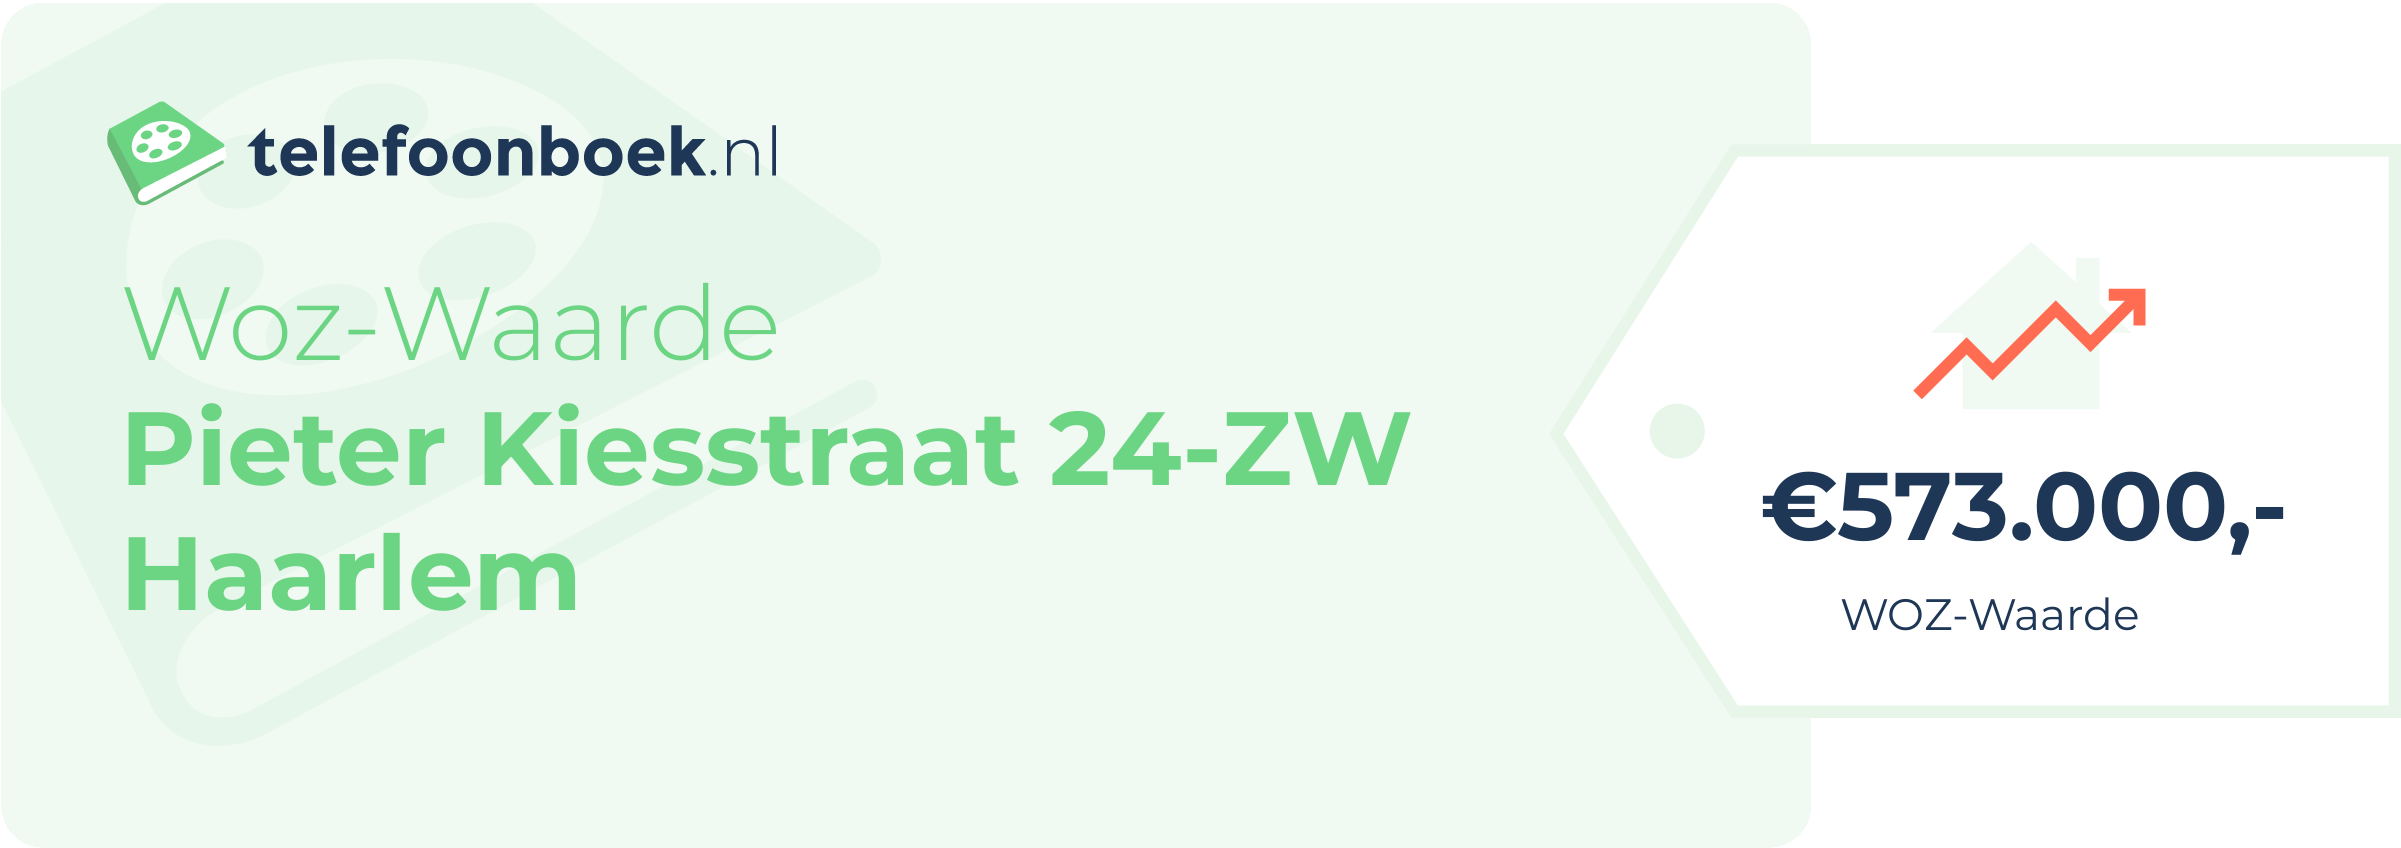 WOZ-waarde Pieter Kiesstraat 24-ZW Haarlem